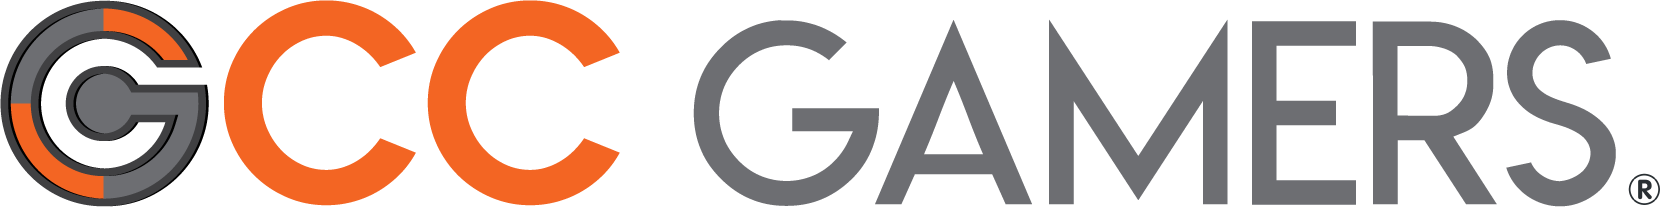 gccgamers logo